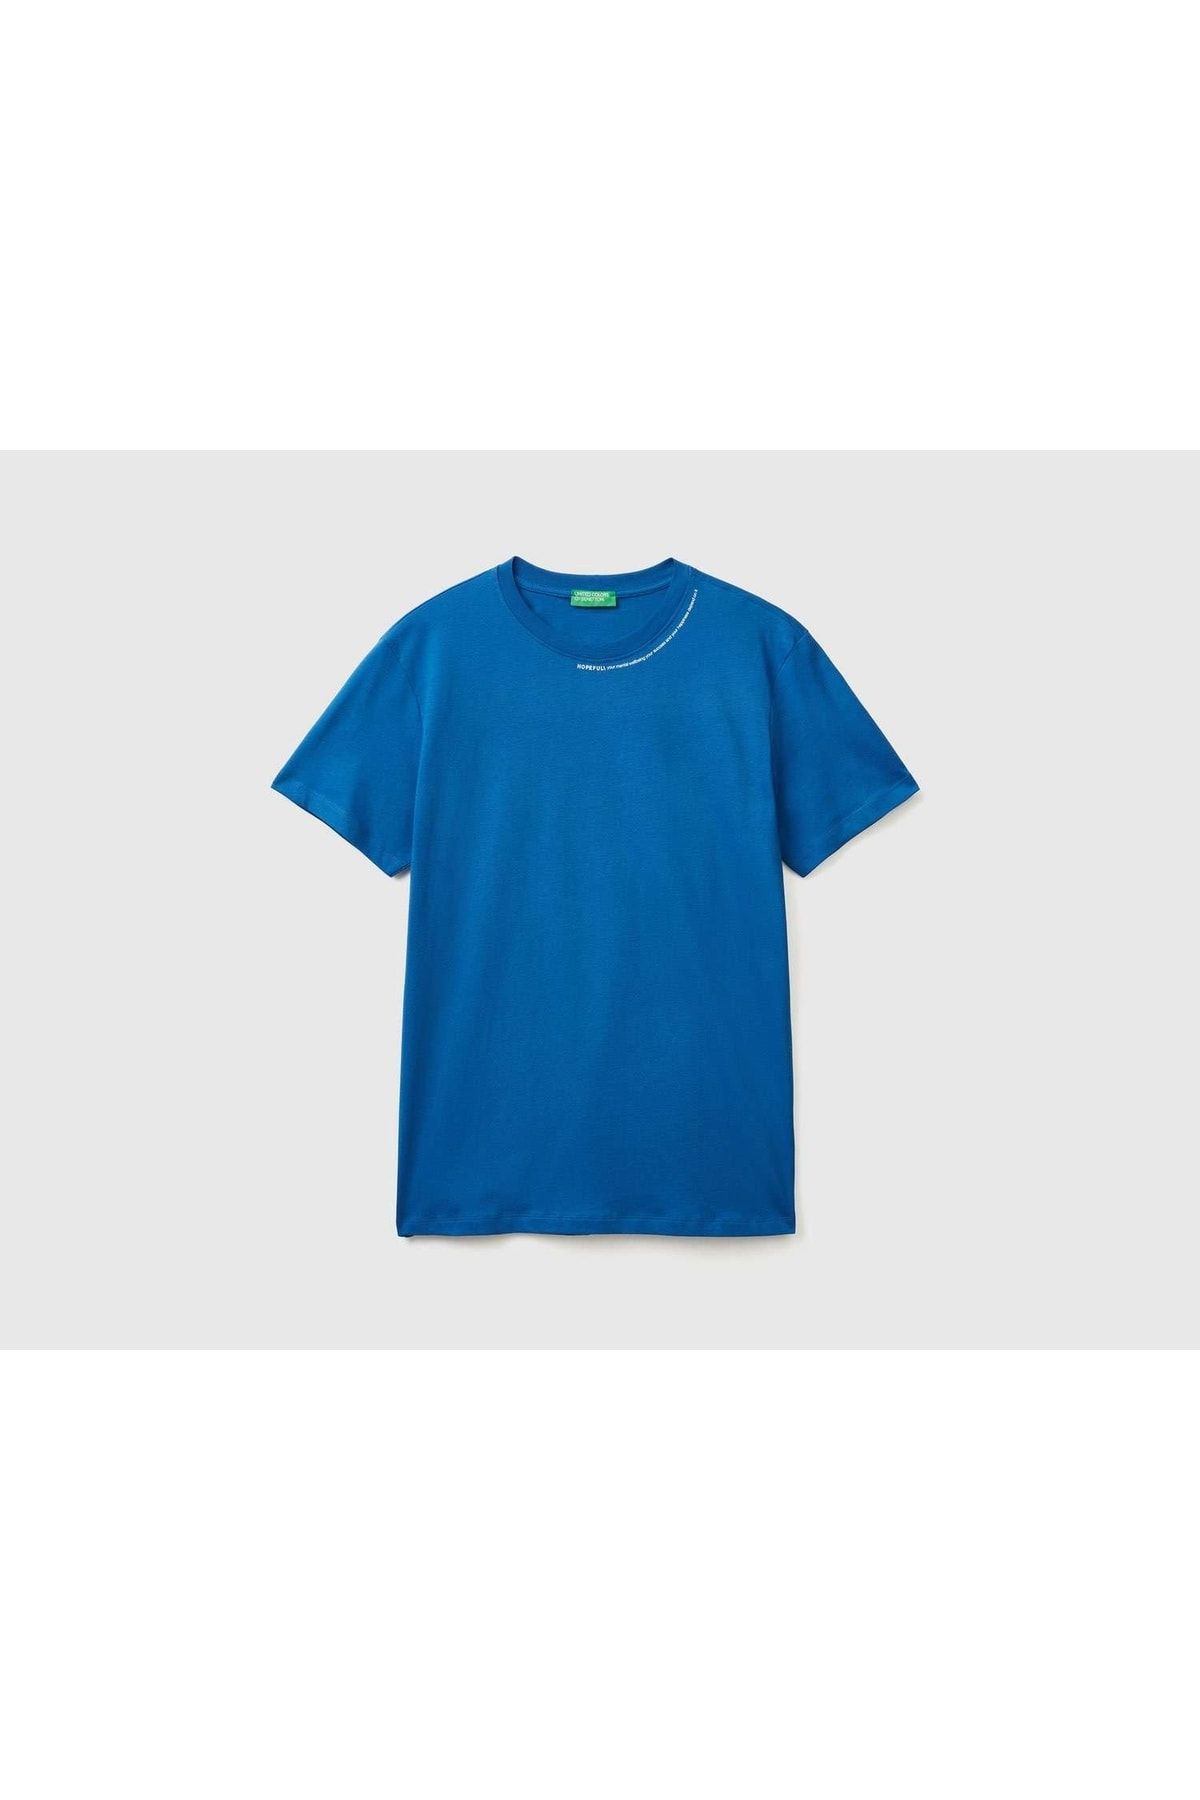 United Colors of Benetton Tematik Baskılı %100 Koton T-shirt